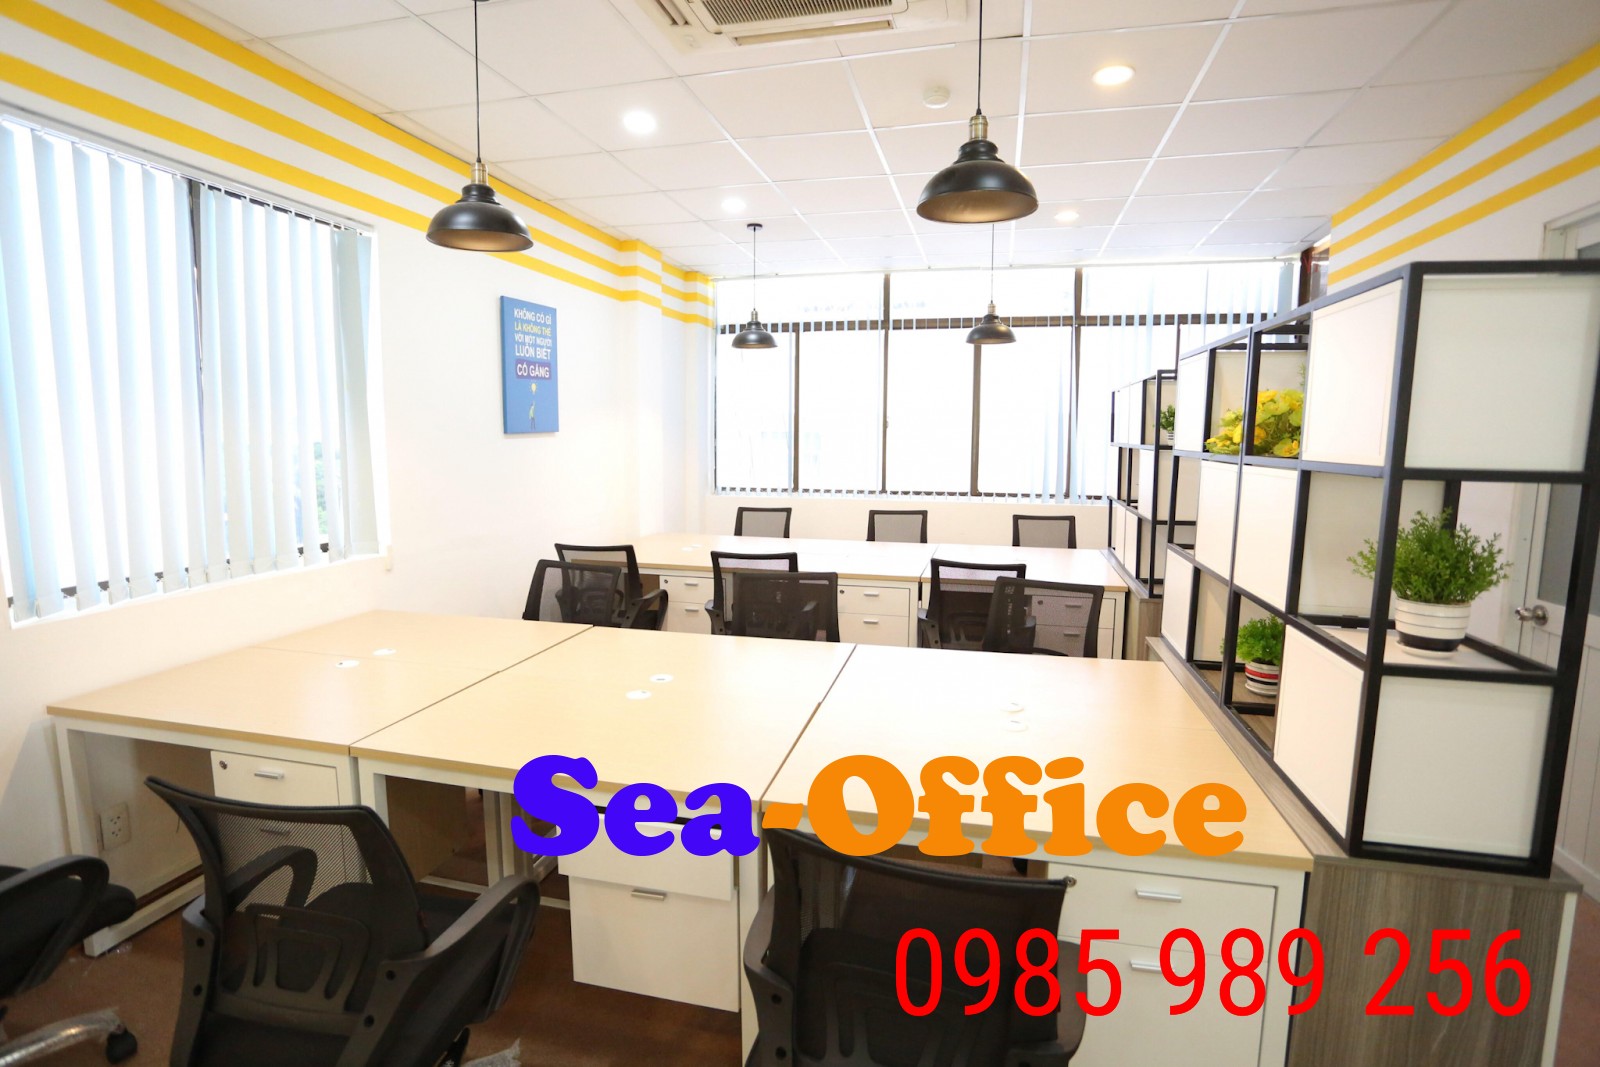 Chỗ làm việc rộng rãi, sạch sẽ tại hệ thống văn phòng cho thuê của Seaoffice